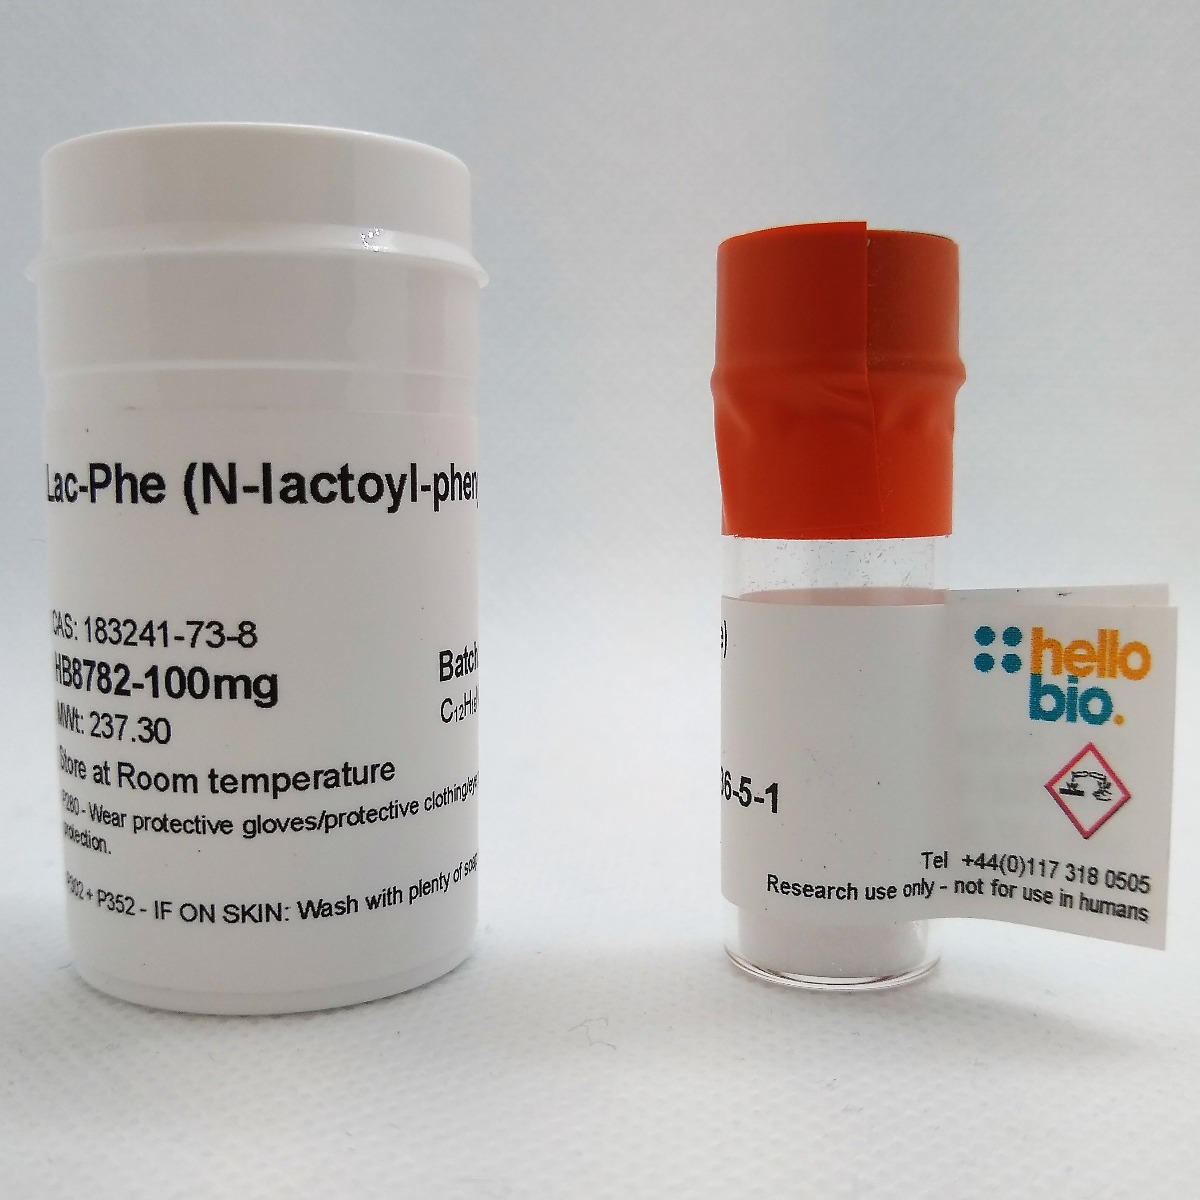 Lac-Phe (N-lactoyl-phenylalanine) product vial image | Hello Bio
